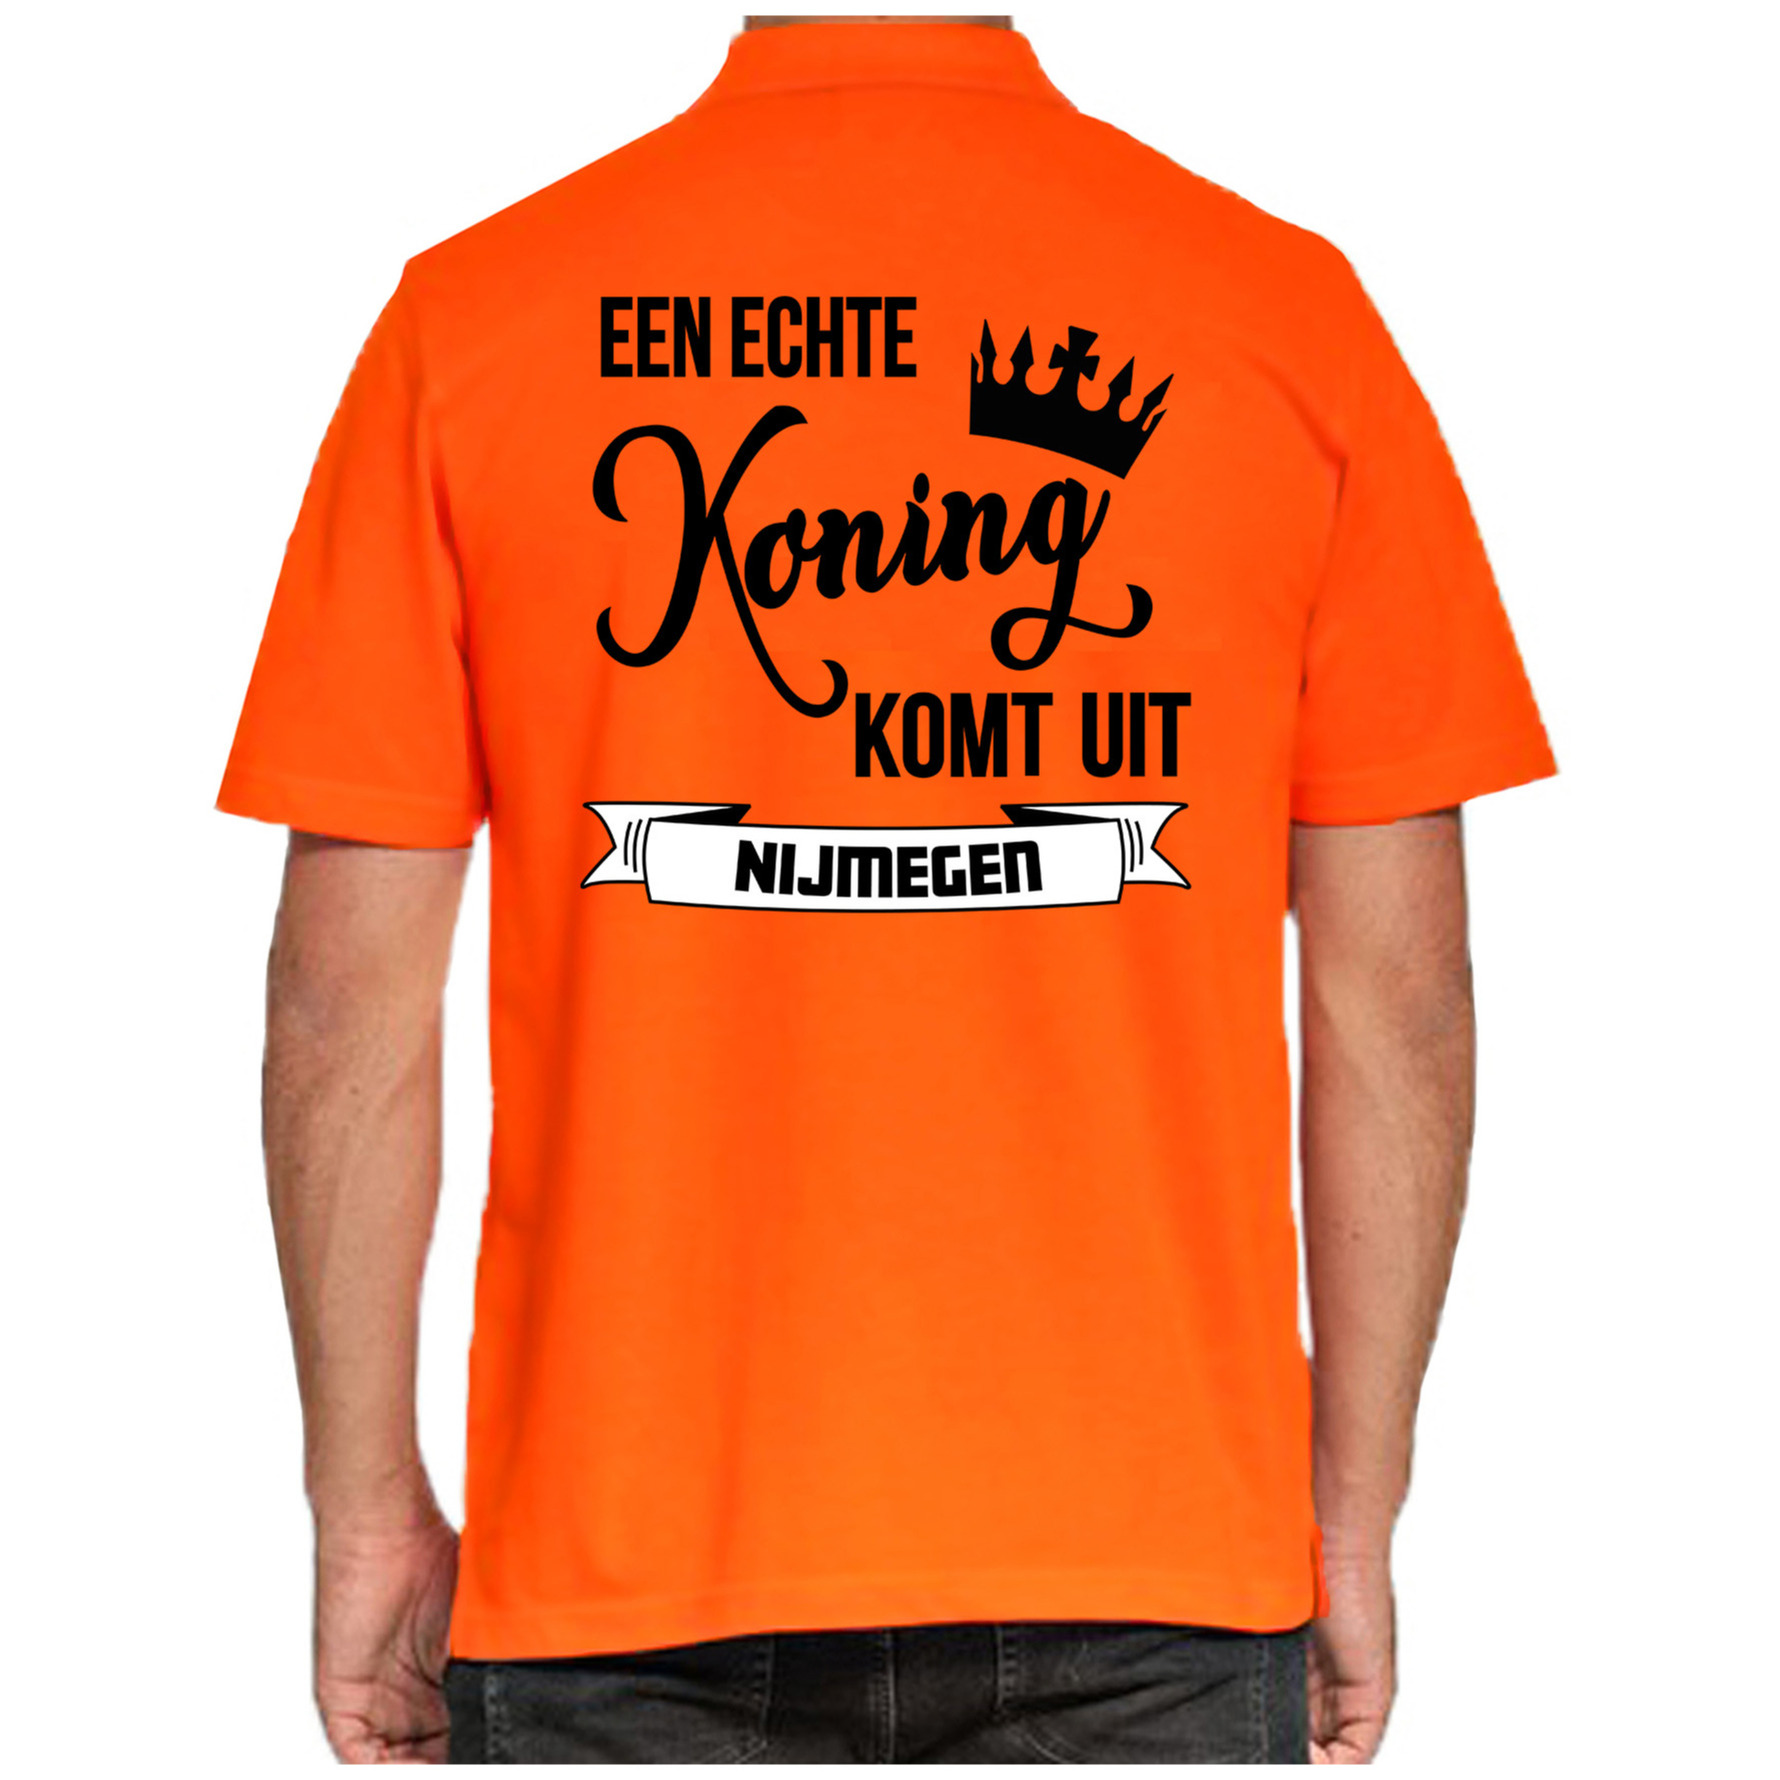 Oranje Koningsdag polo echte Koning komt uit Nijmegen heren shirt